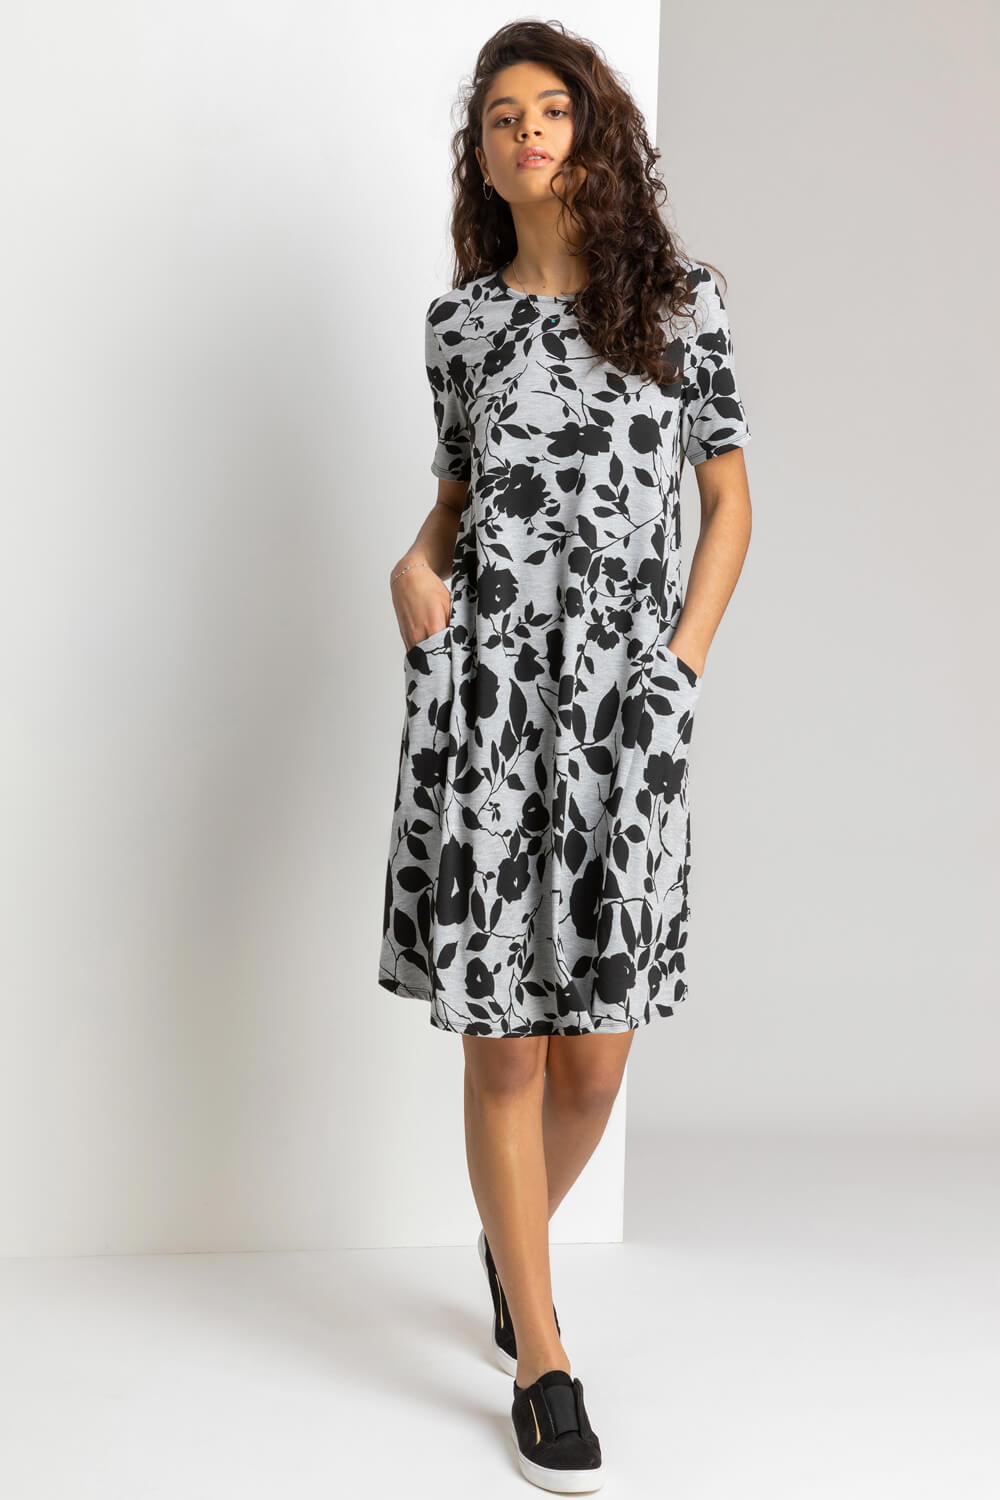 Grey Floral Print Pocket Shift Dress, Image 3 of 4